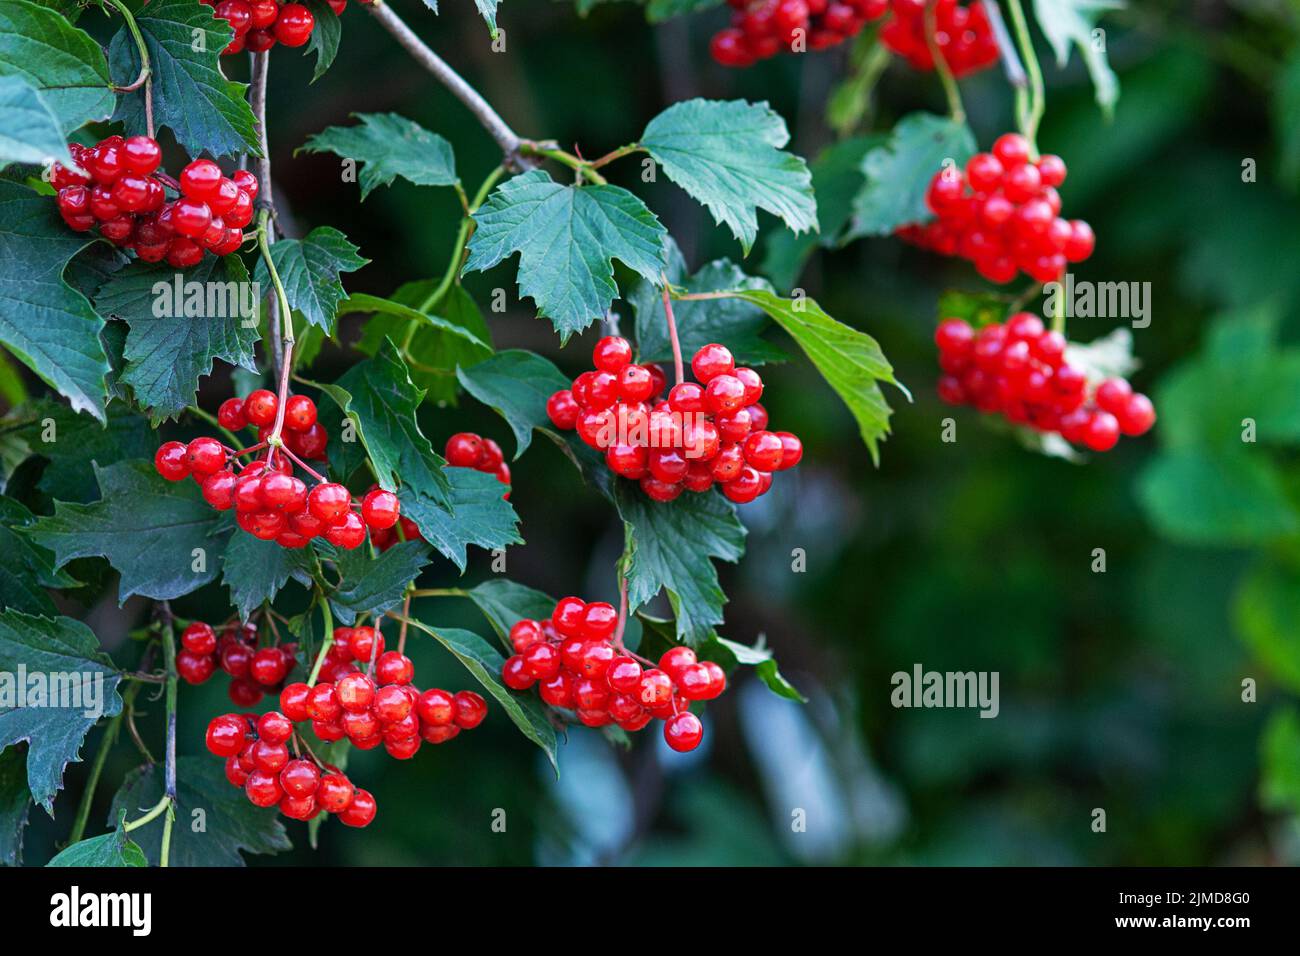 Red viburnum or guelder rose berries on bush (Viburnum opulus) Stock Photo